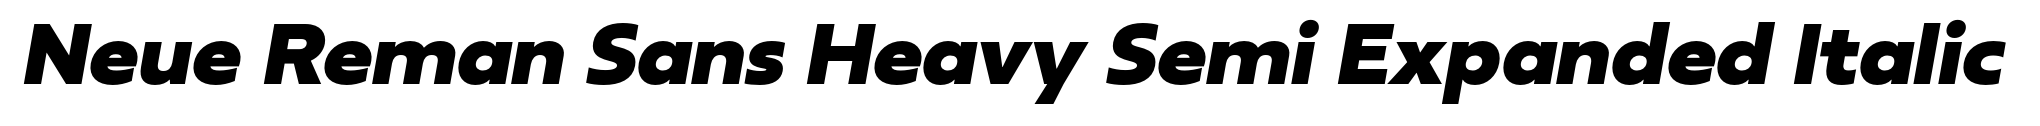 Neue Reman Sans Heavy Semi Expanded Italic image